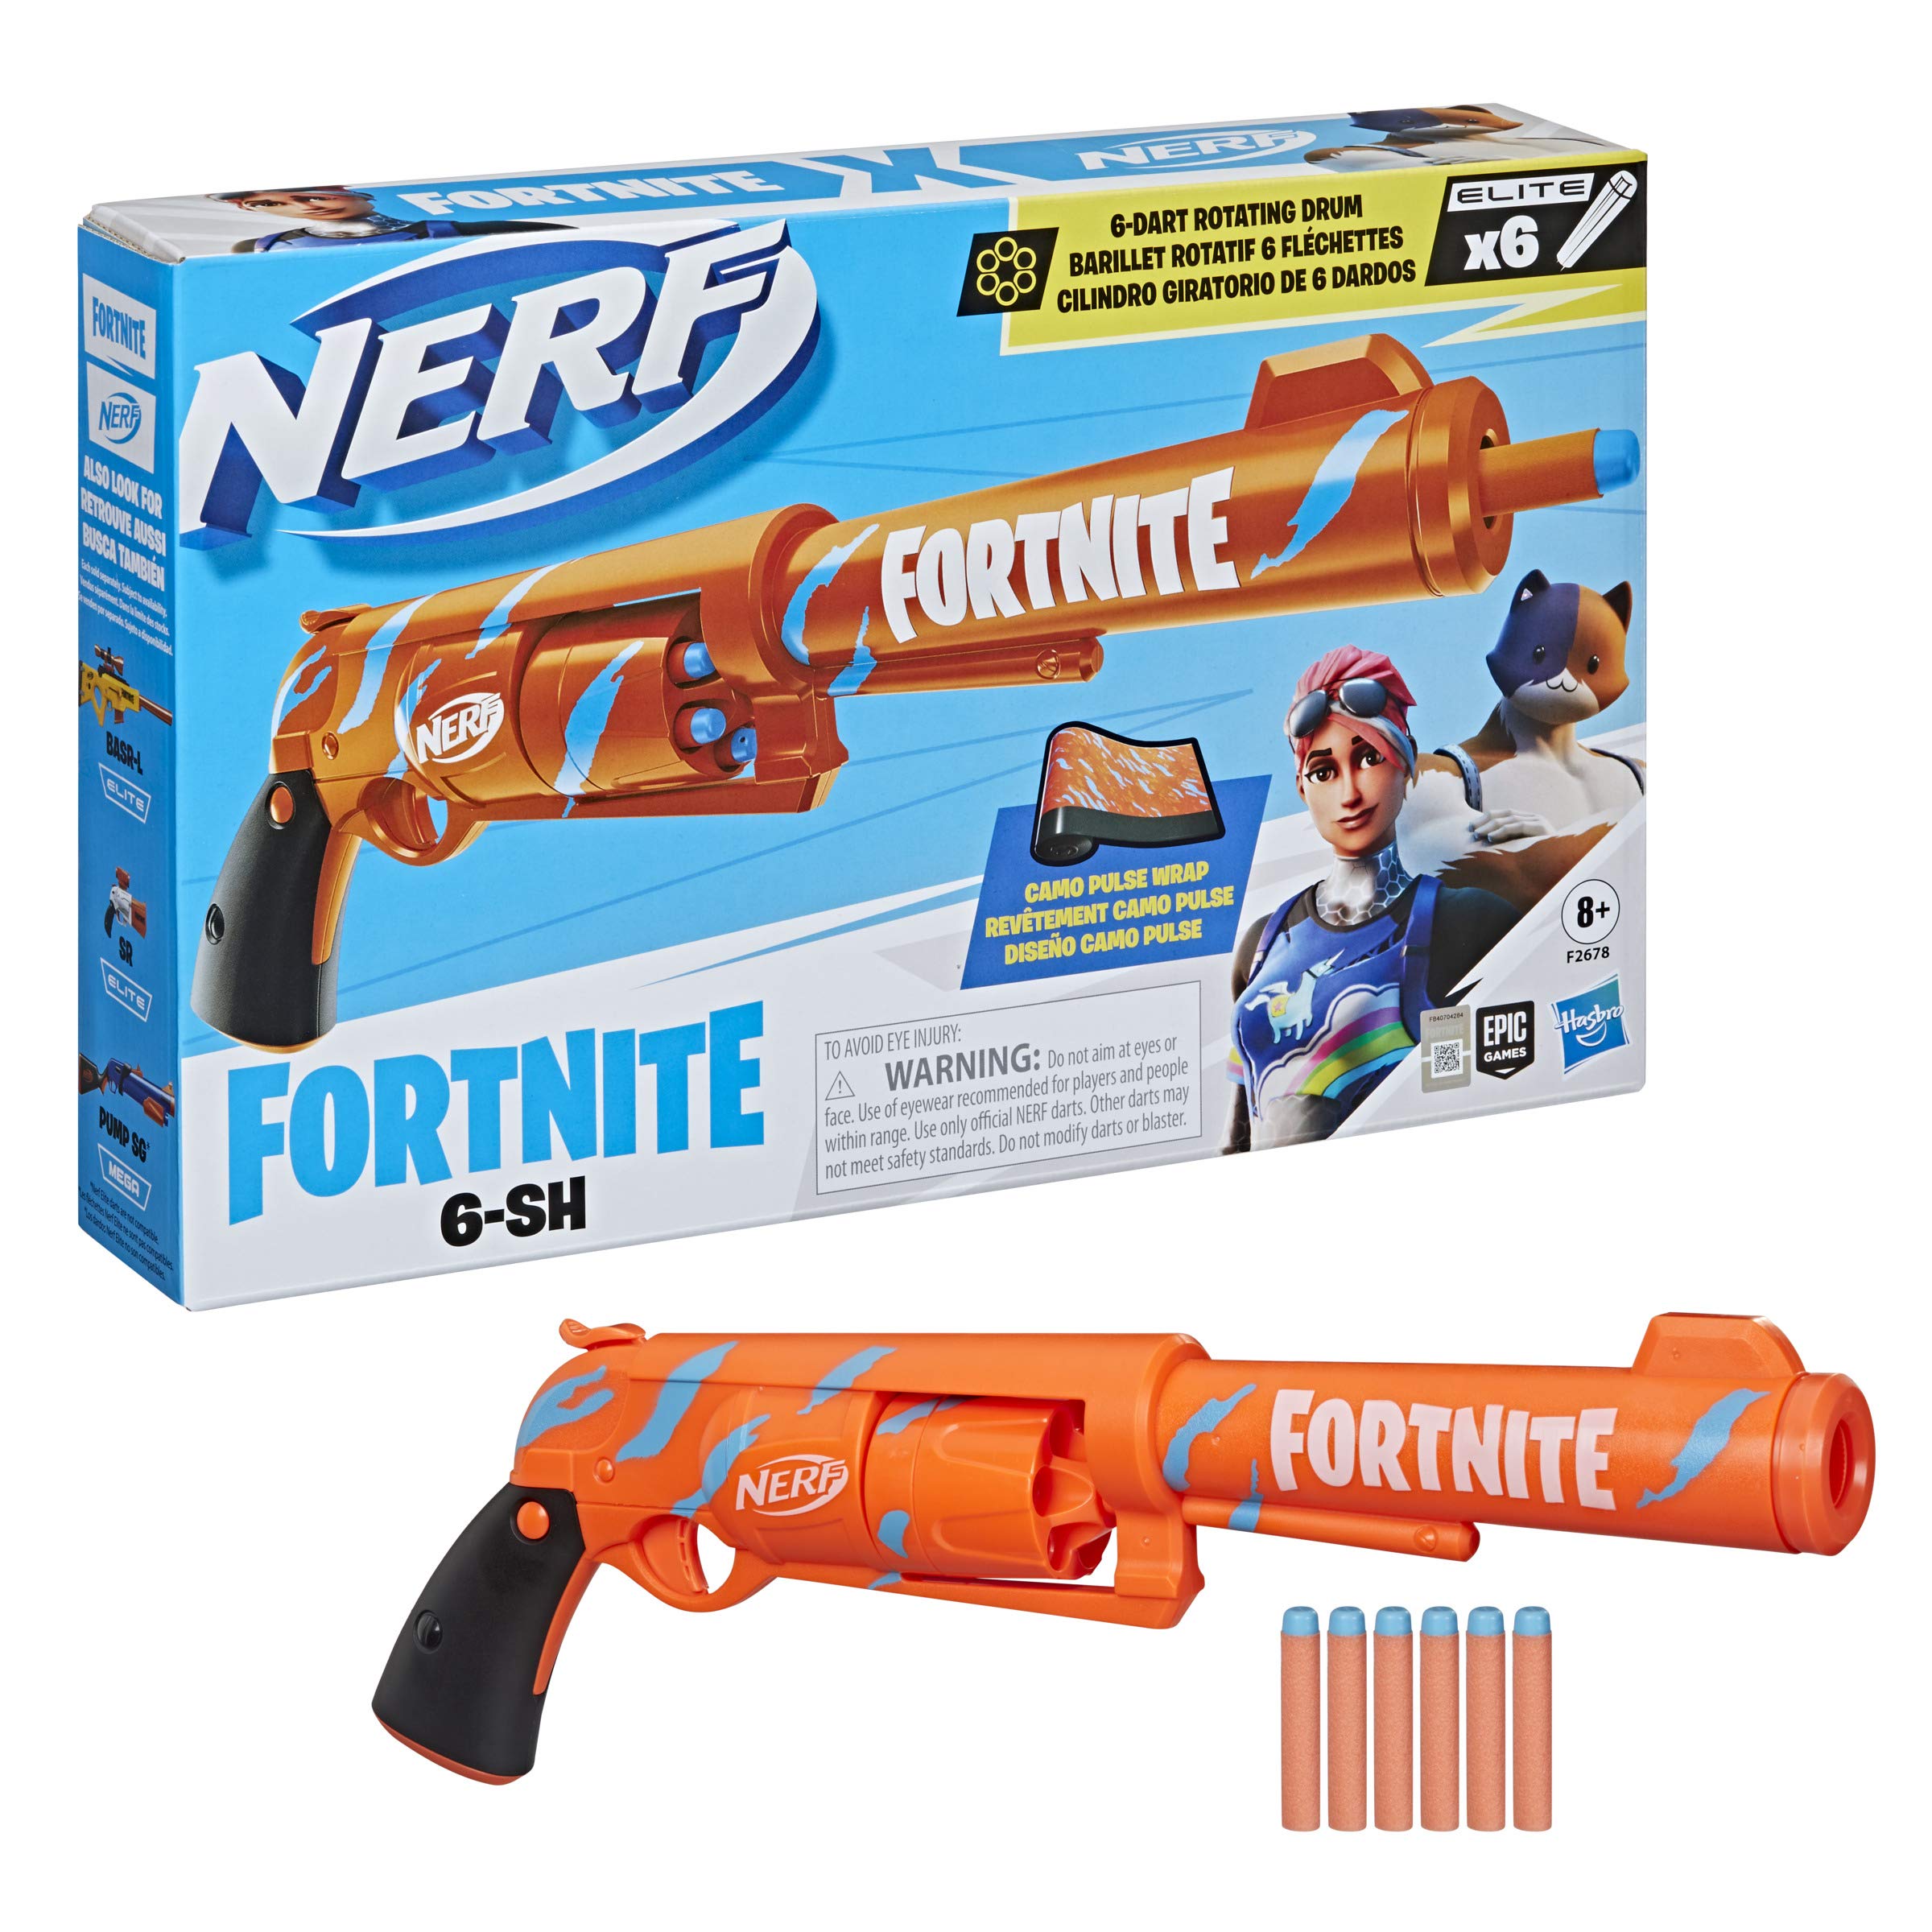 $8.73: NERF Fortnite 6-SH Dart Blaster